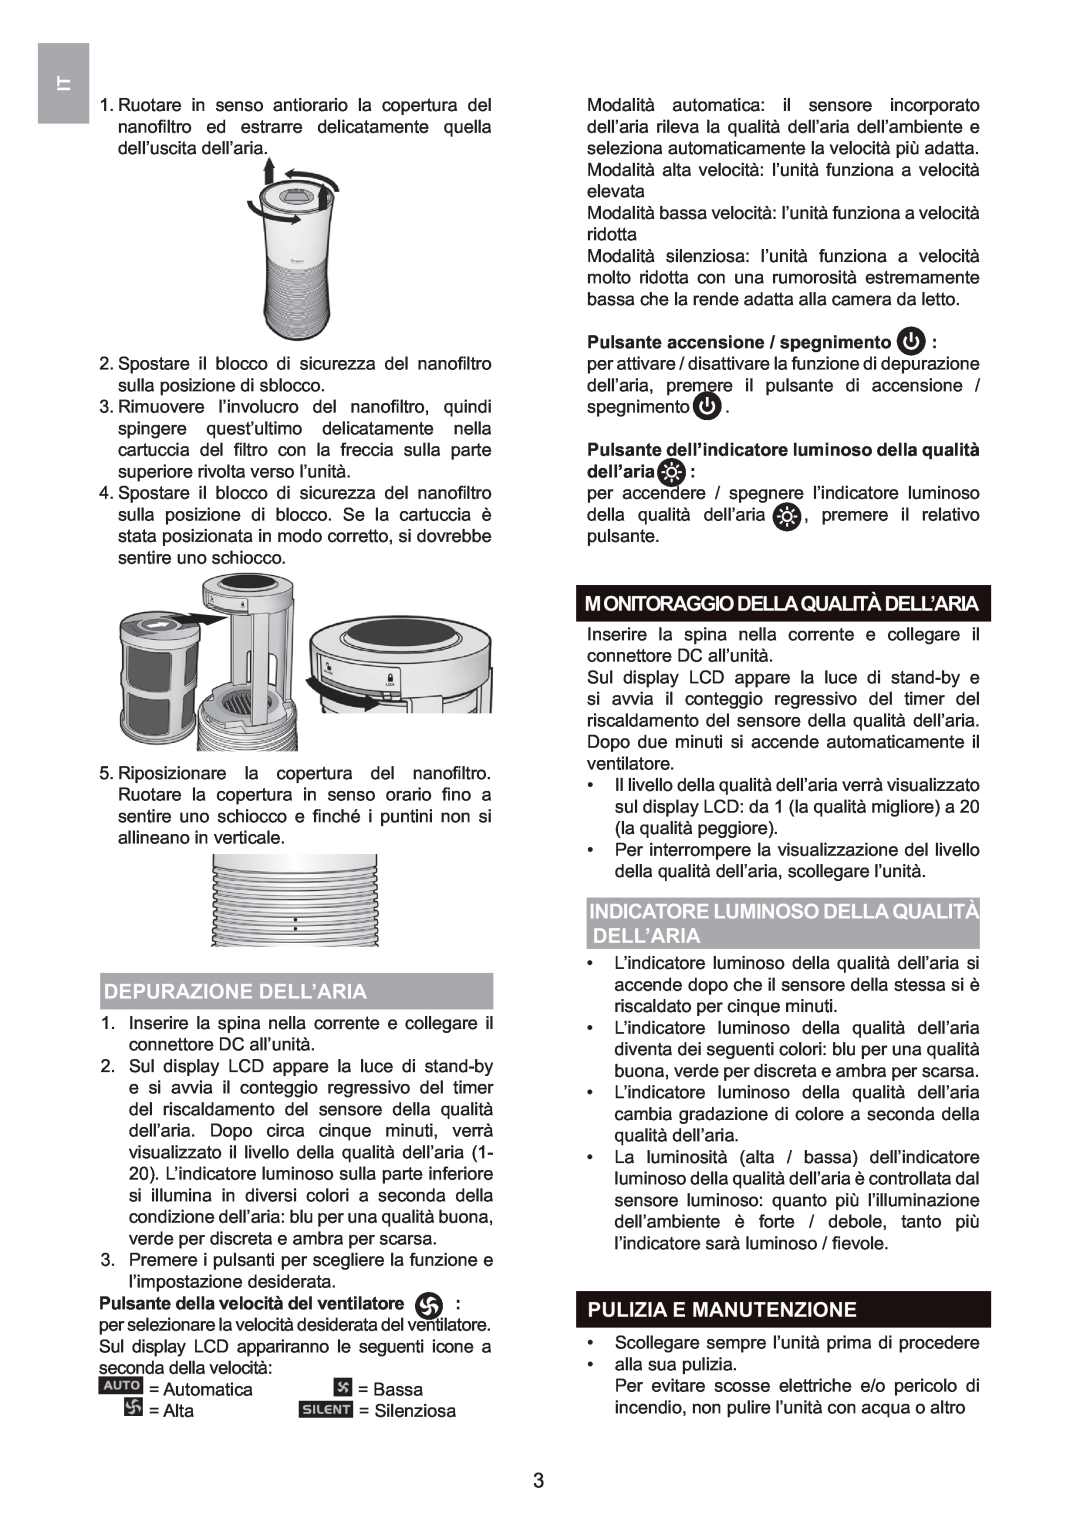 Oregon Scientific WS907 user manual Depurazione Dell’Aria, Monitoraggiodellaqualitàdell’Aria, Pulizia E Manutenzione 